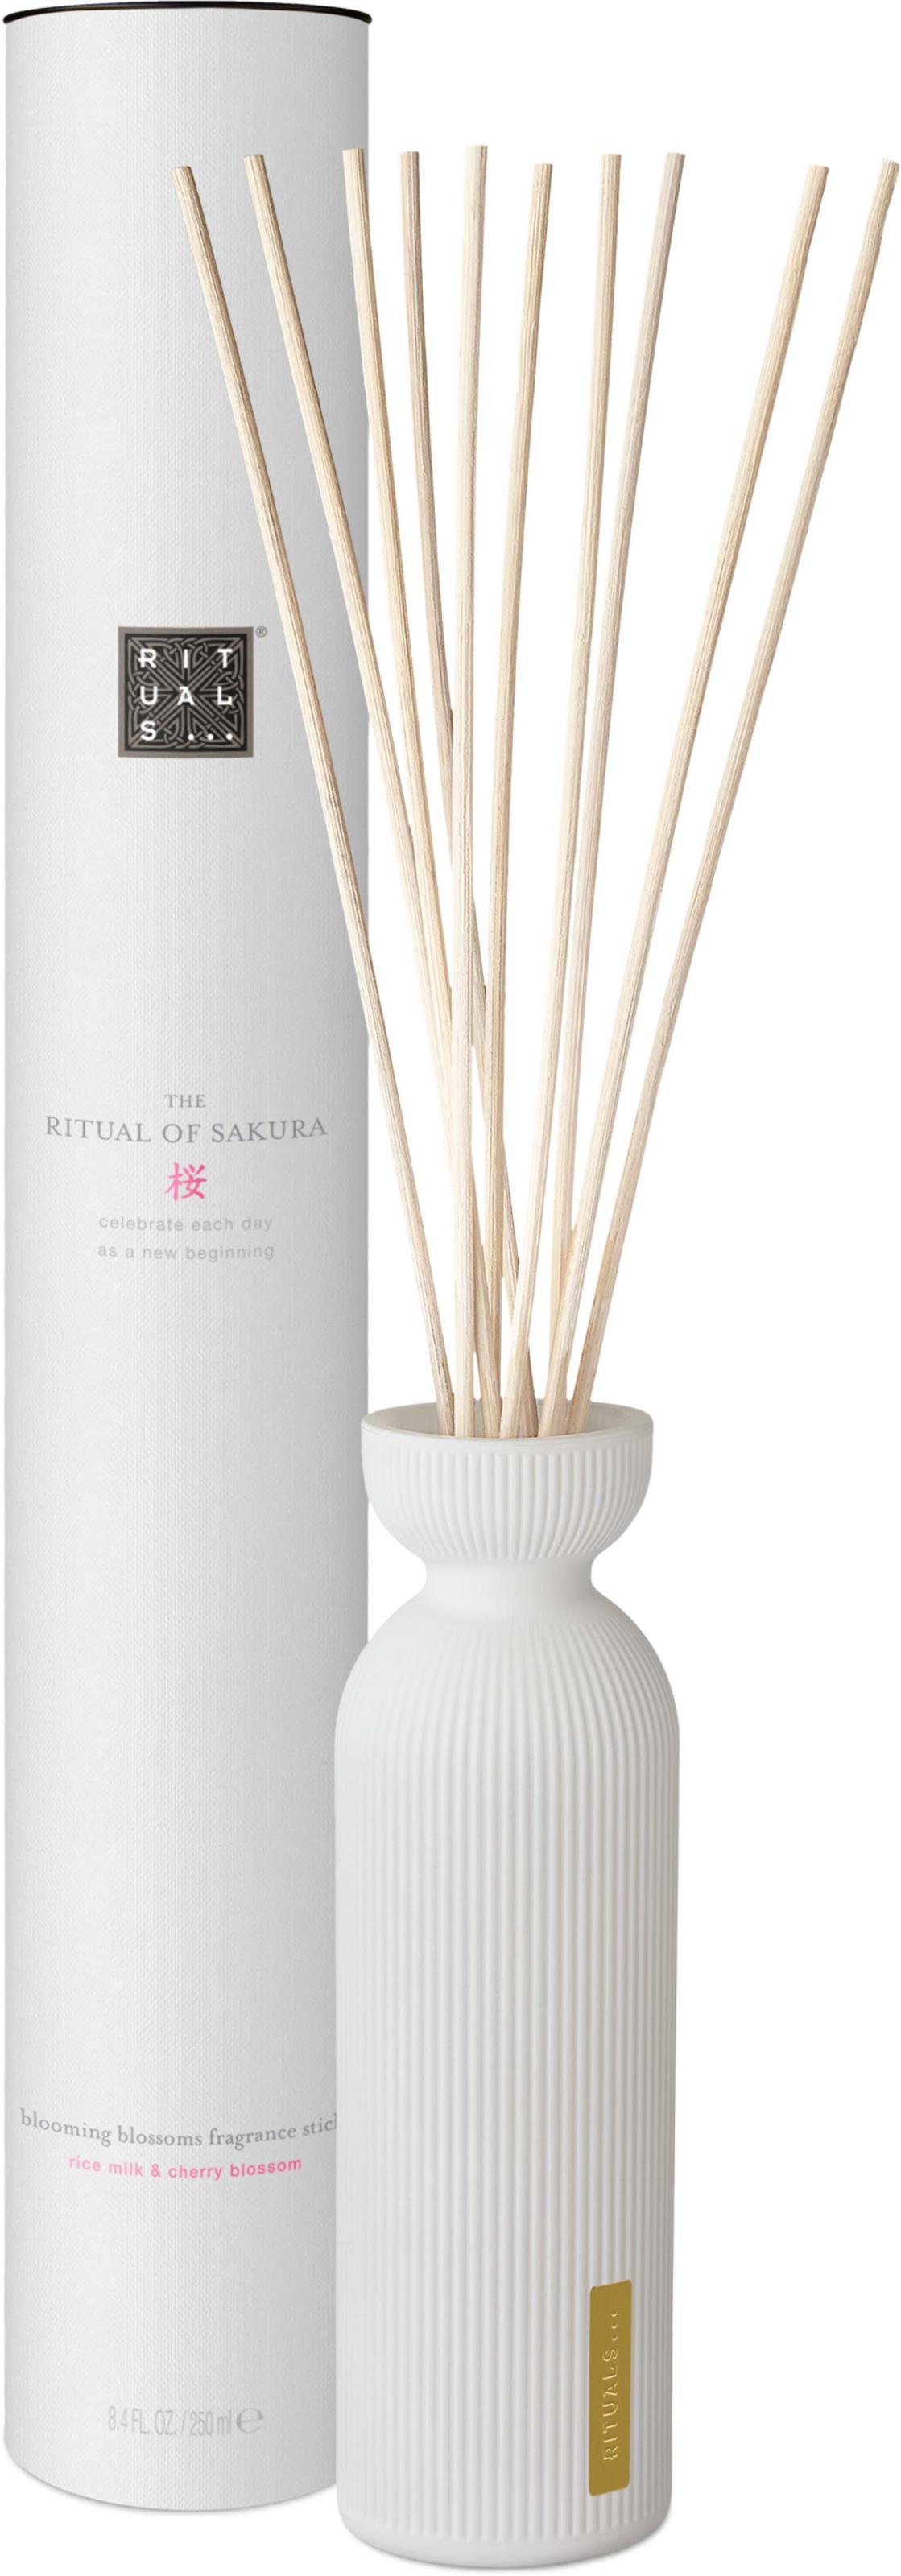 Rituals The Ritual of Sakura Home Fragrance Fragrance Sticks